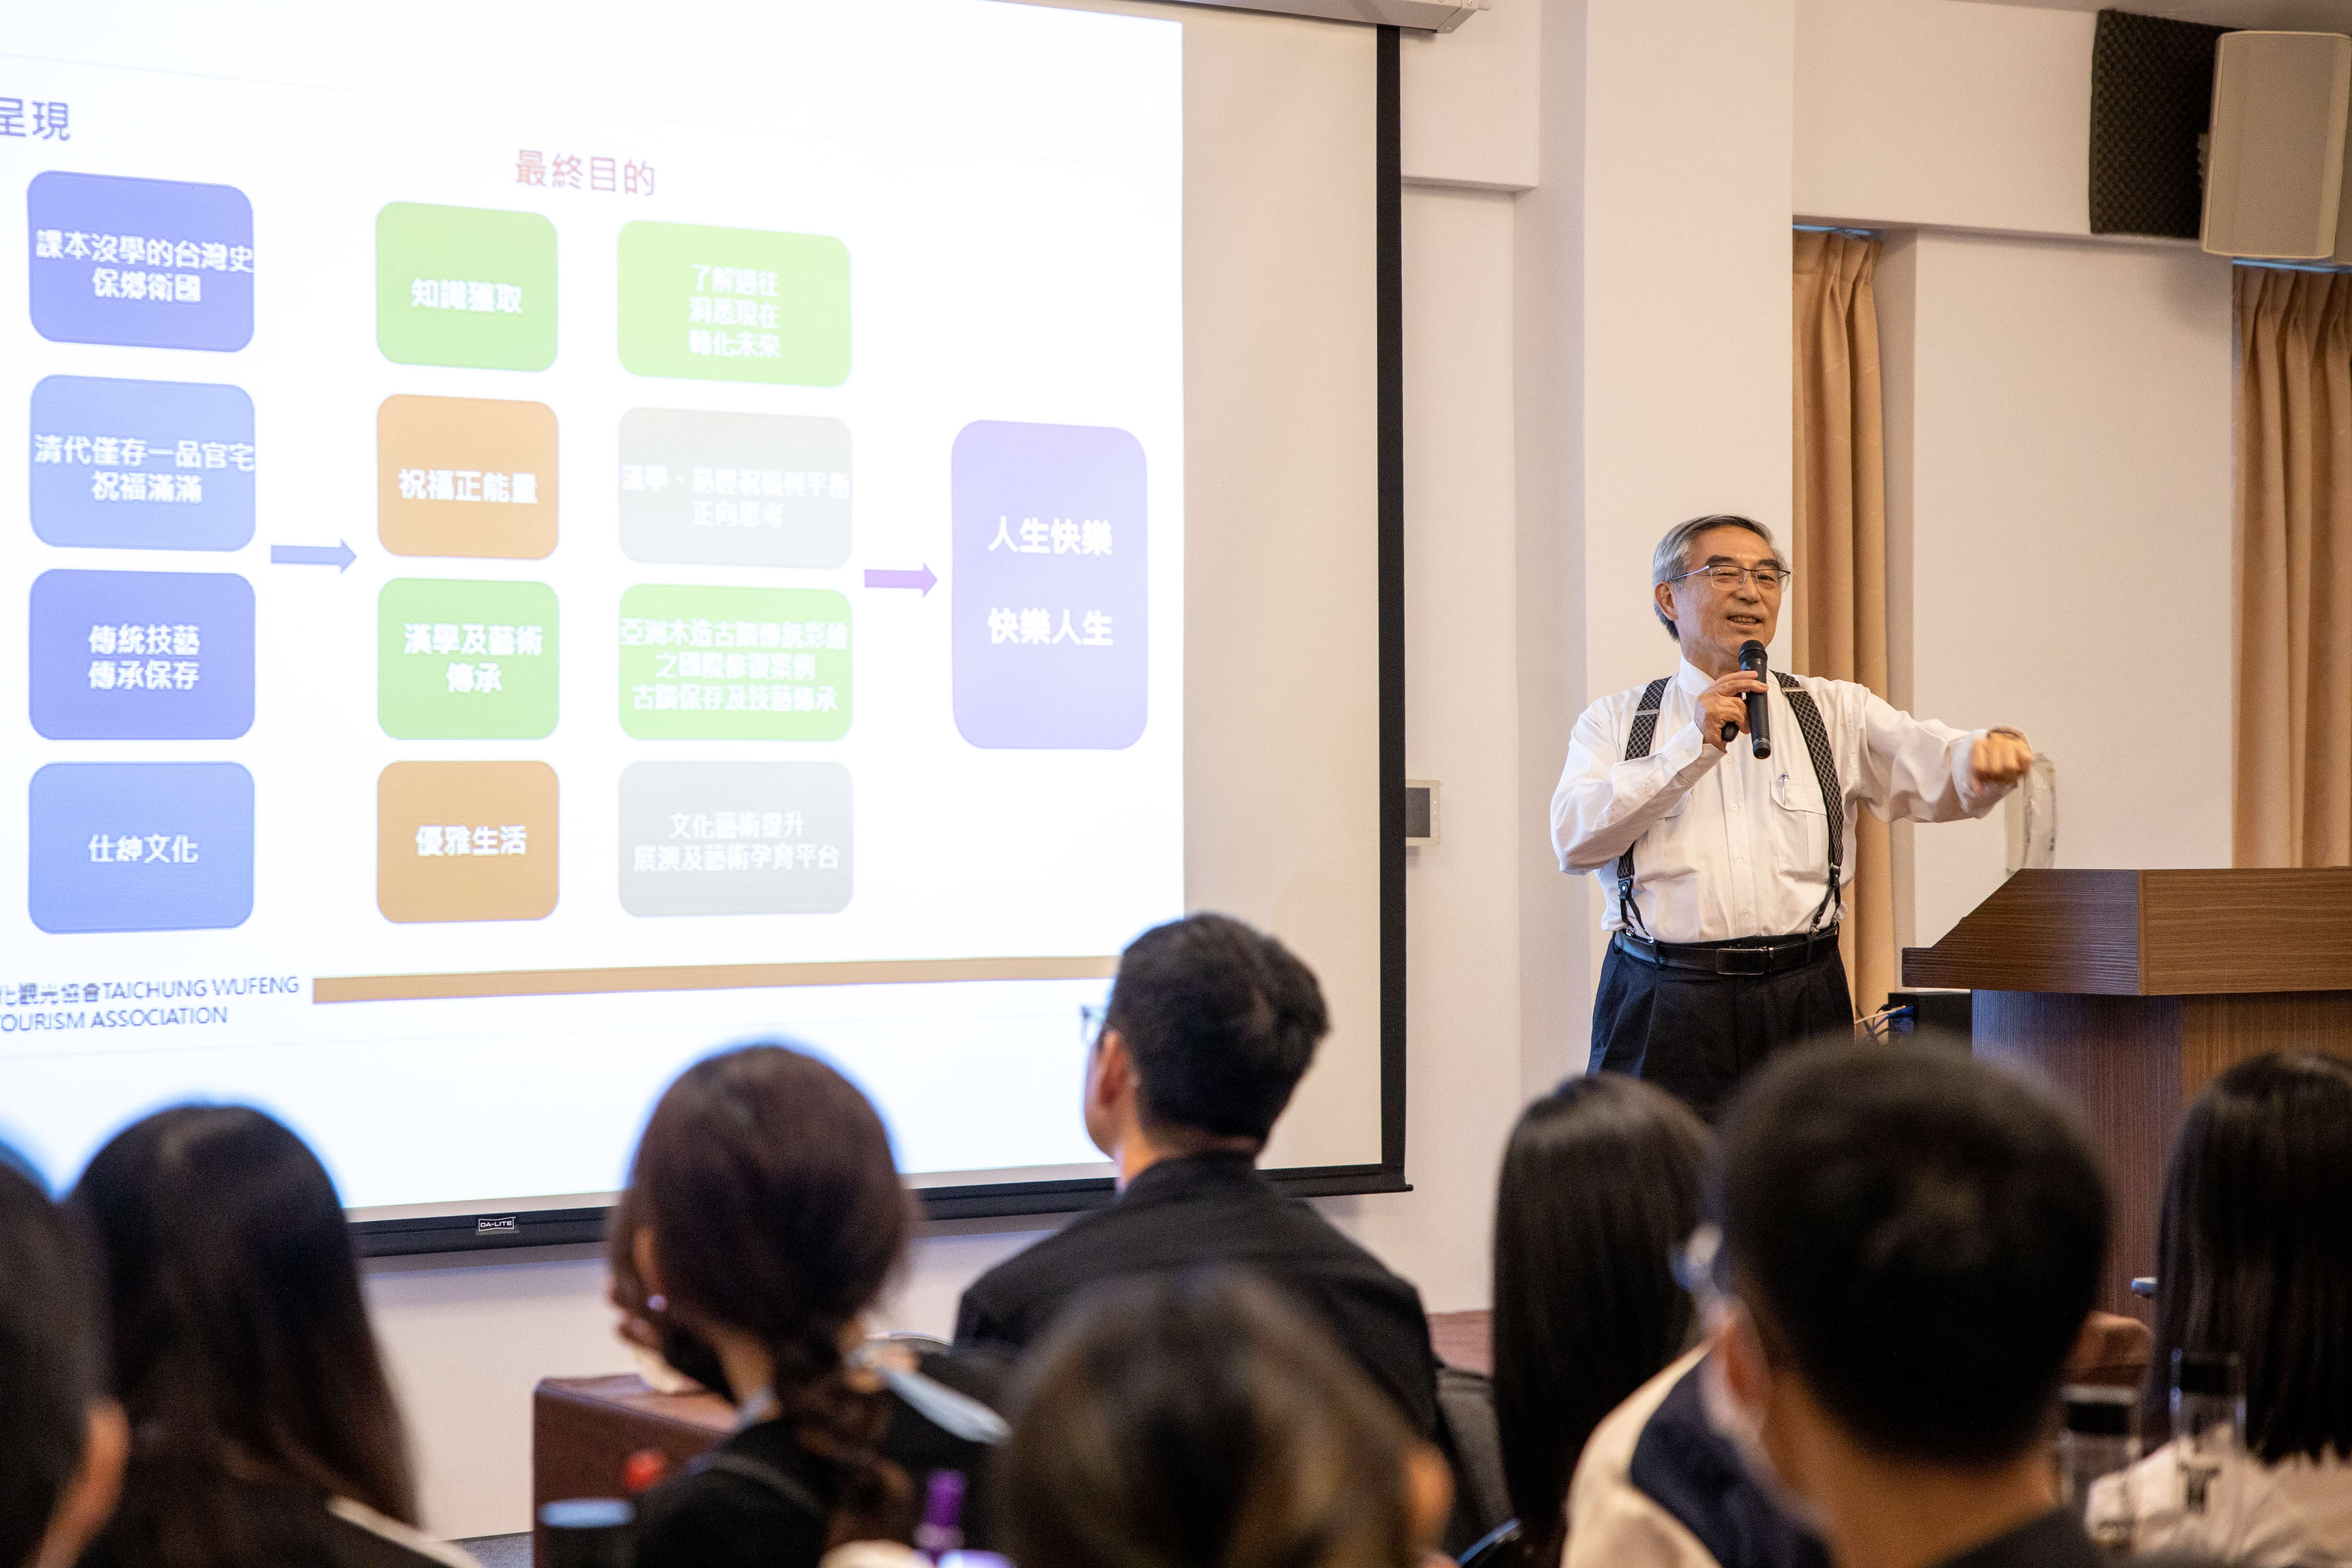 林俊明董事長熱情分享經營文資場域的經驗與籌辦推廣活動的過程。